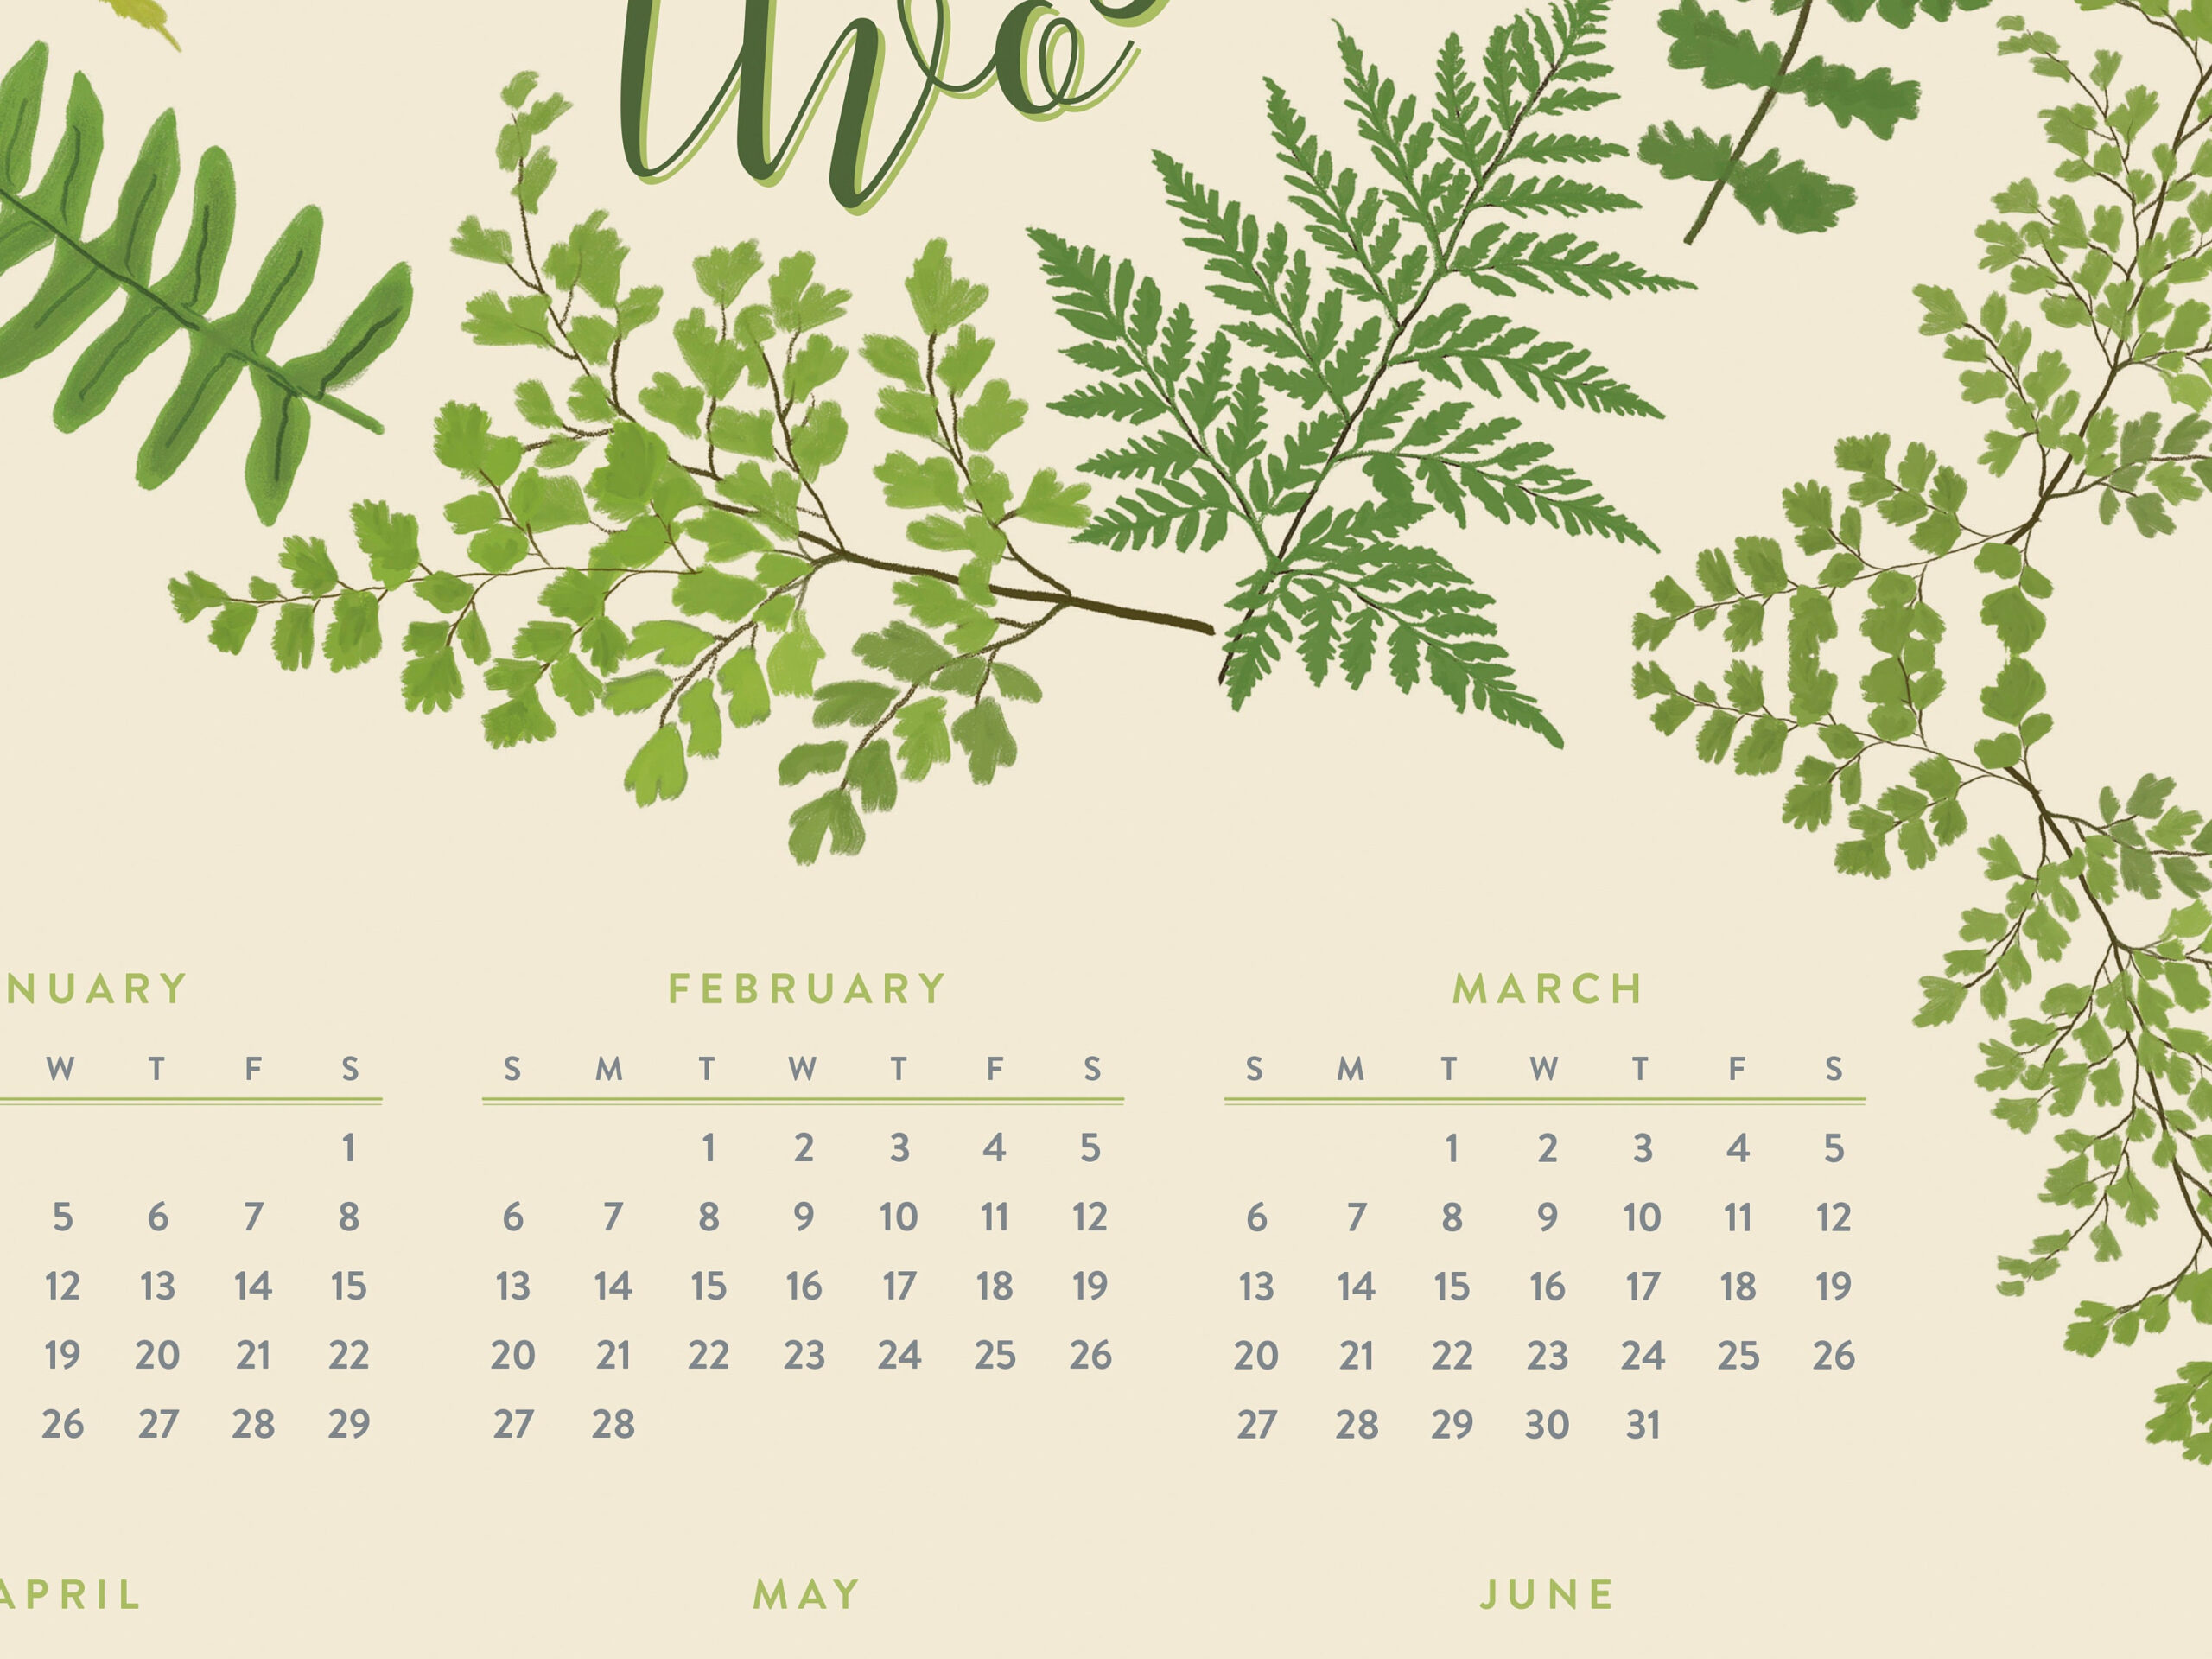 2022 Wall Calendar Yearataglance Calendar 2022 Fern | Etsy for At A Glance Wall Calendar 2022